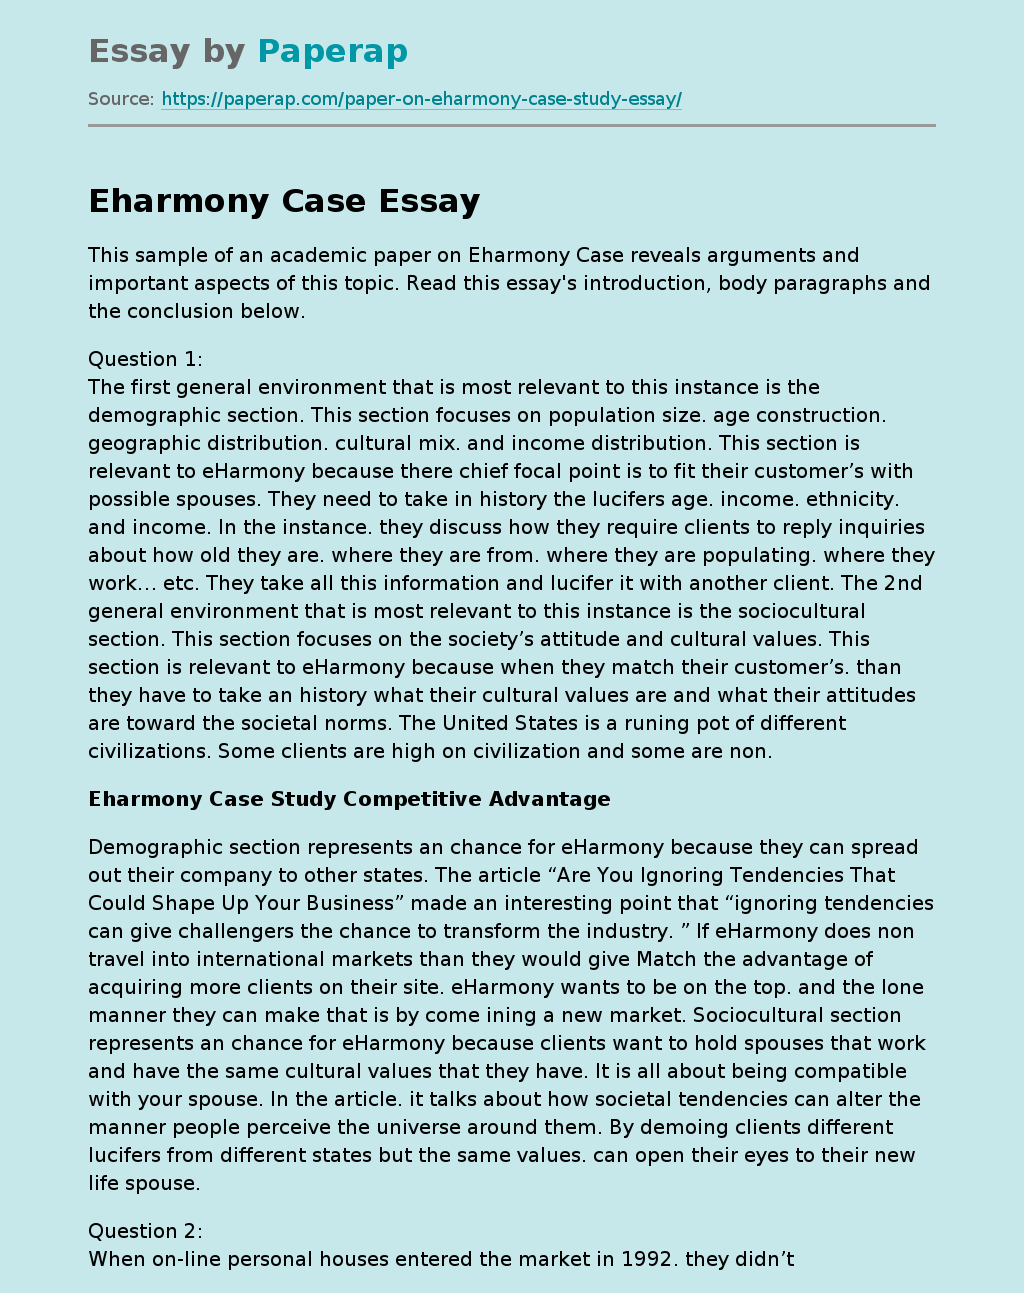 Eharmony Case Overview